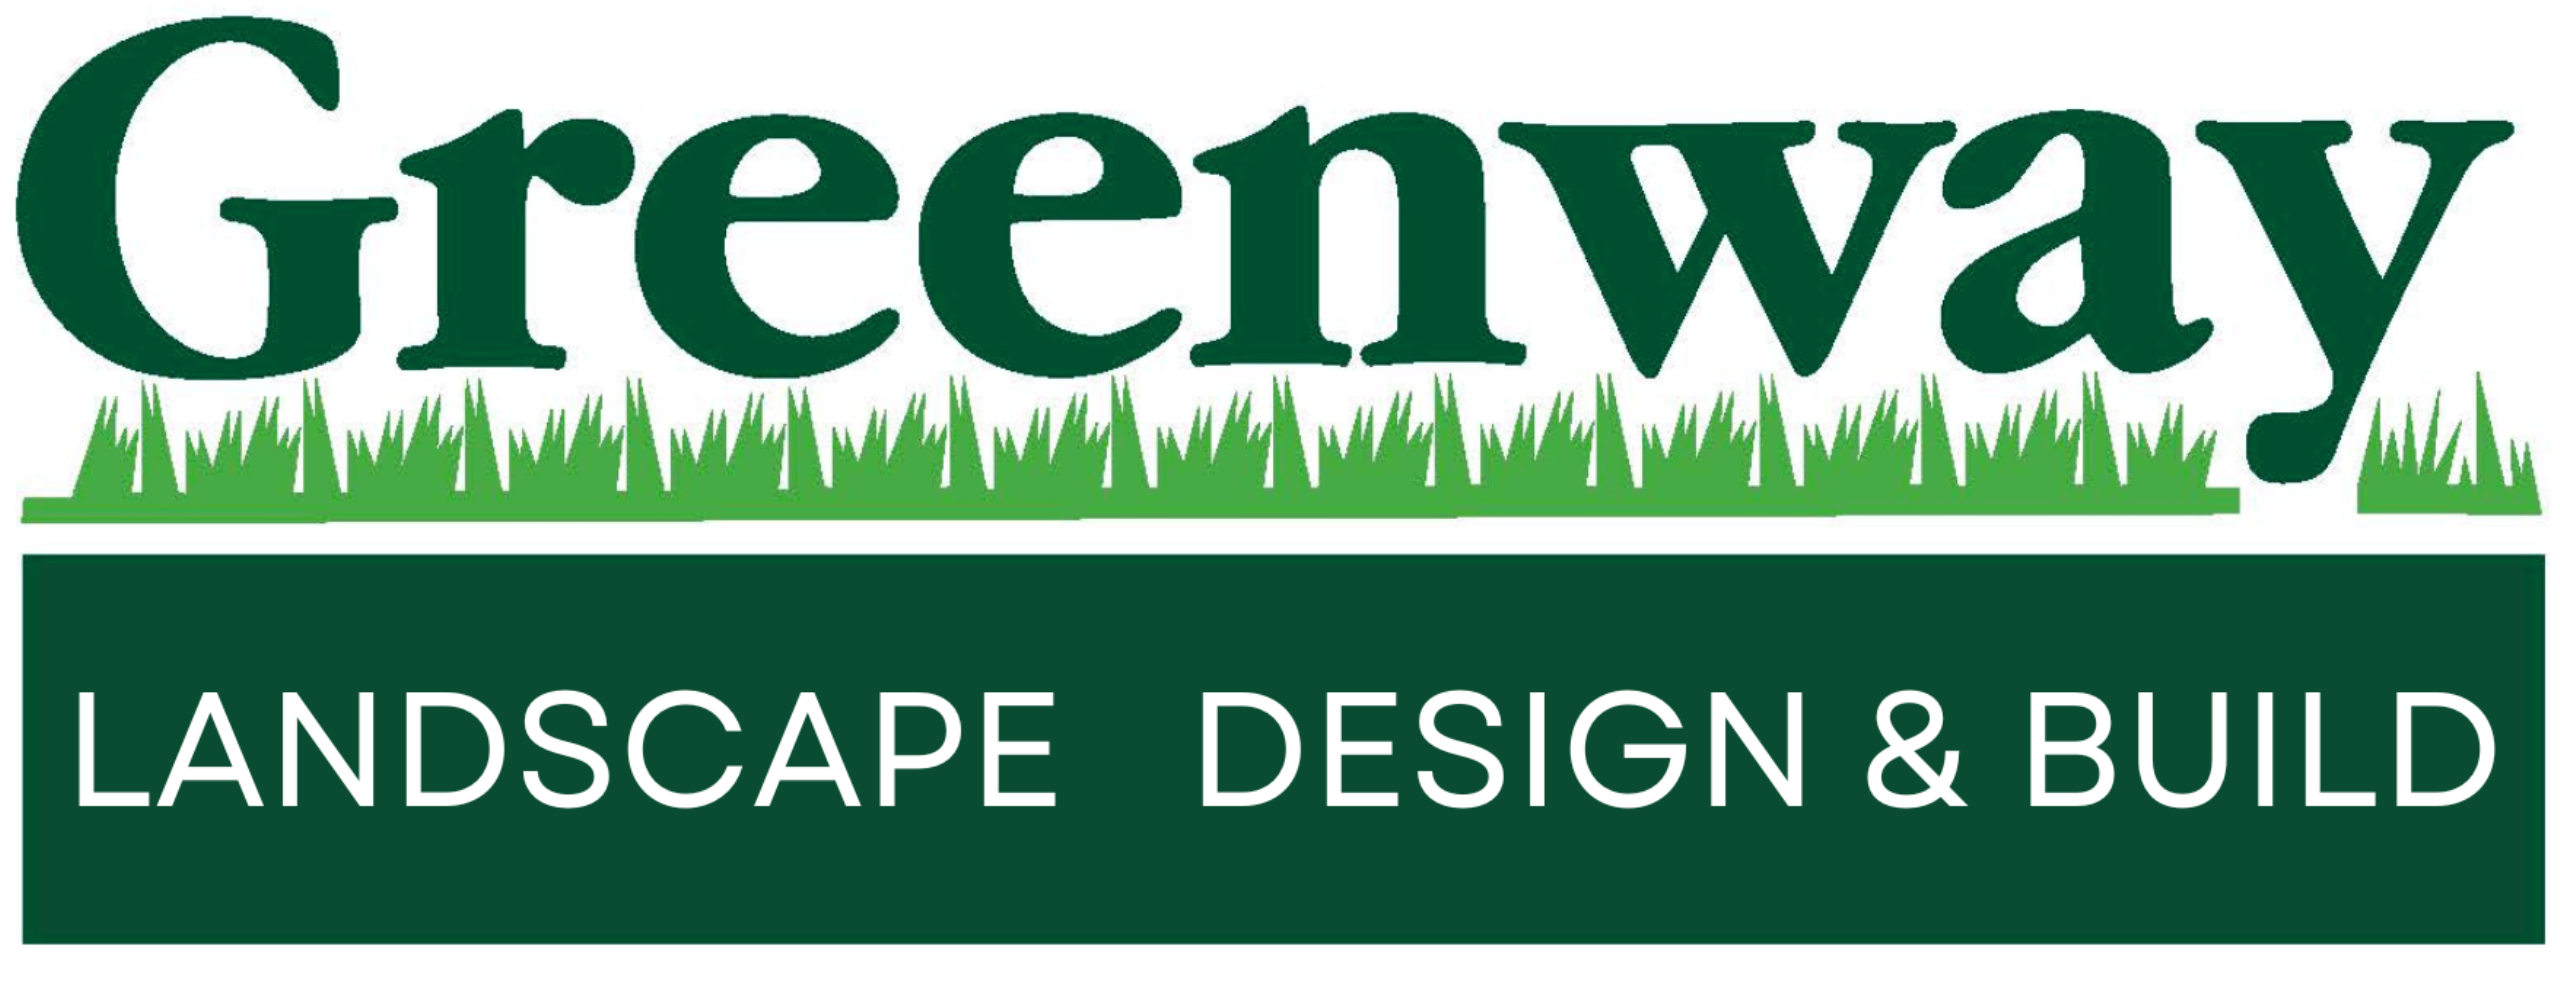 Greenway Landscape Design & Build Logo